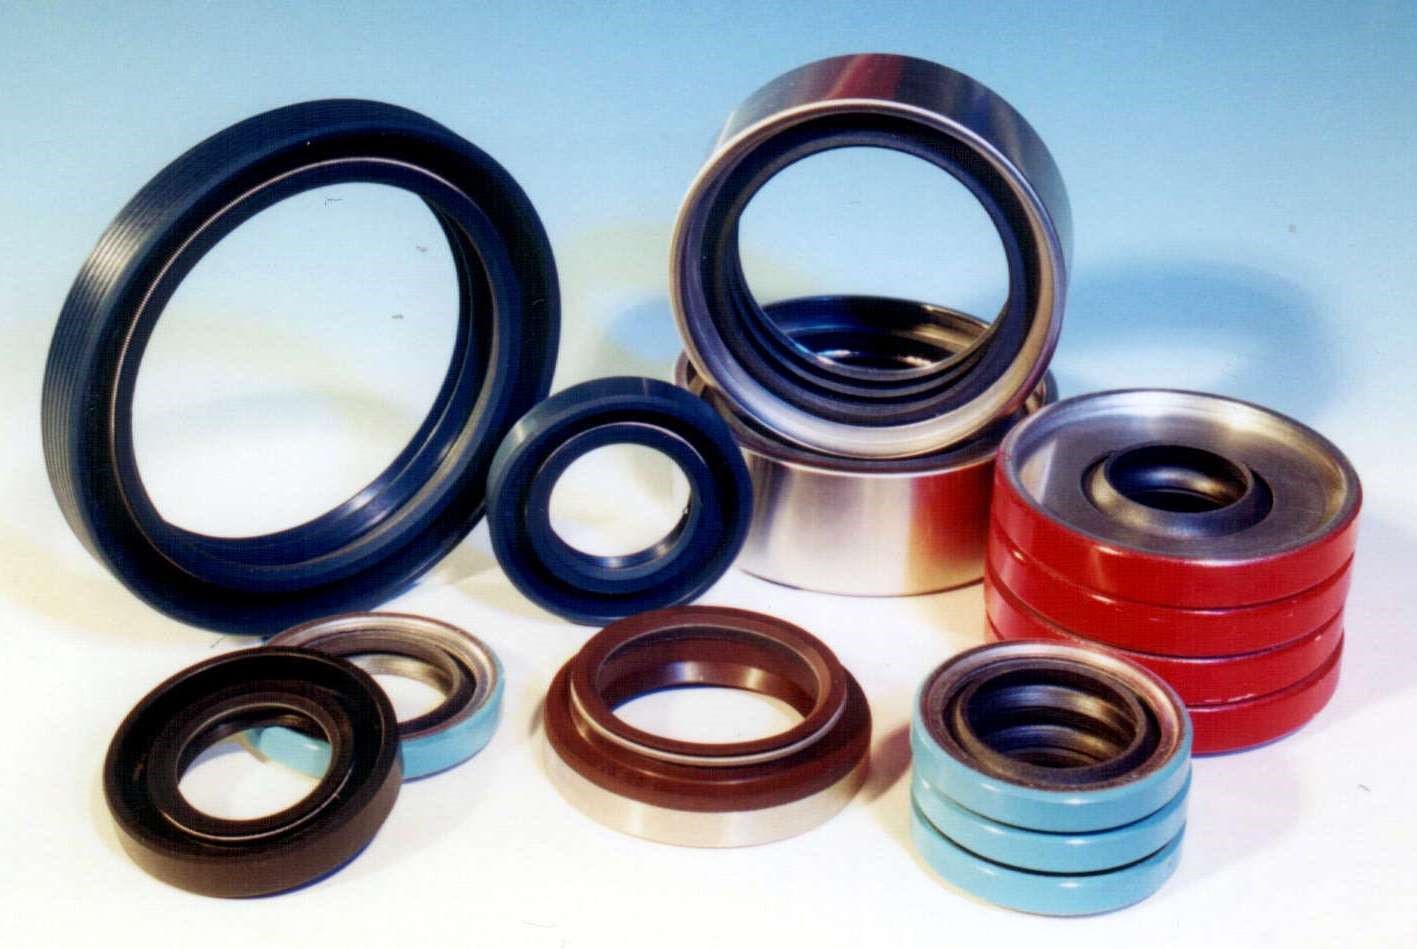 bearings and seals